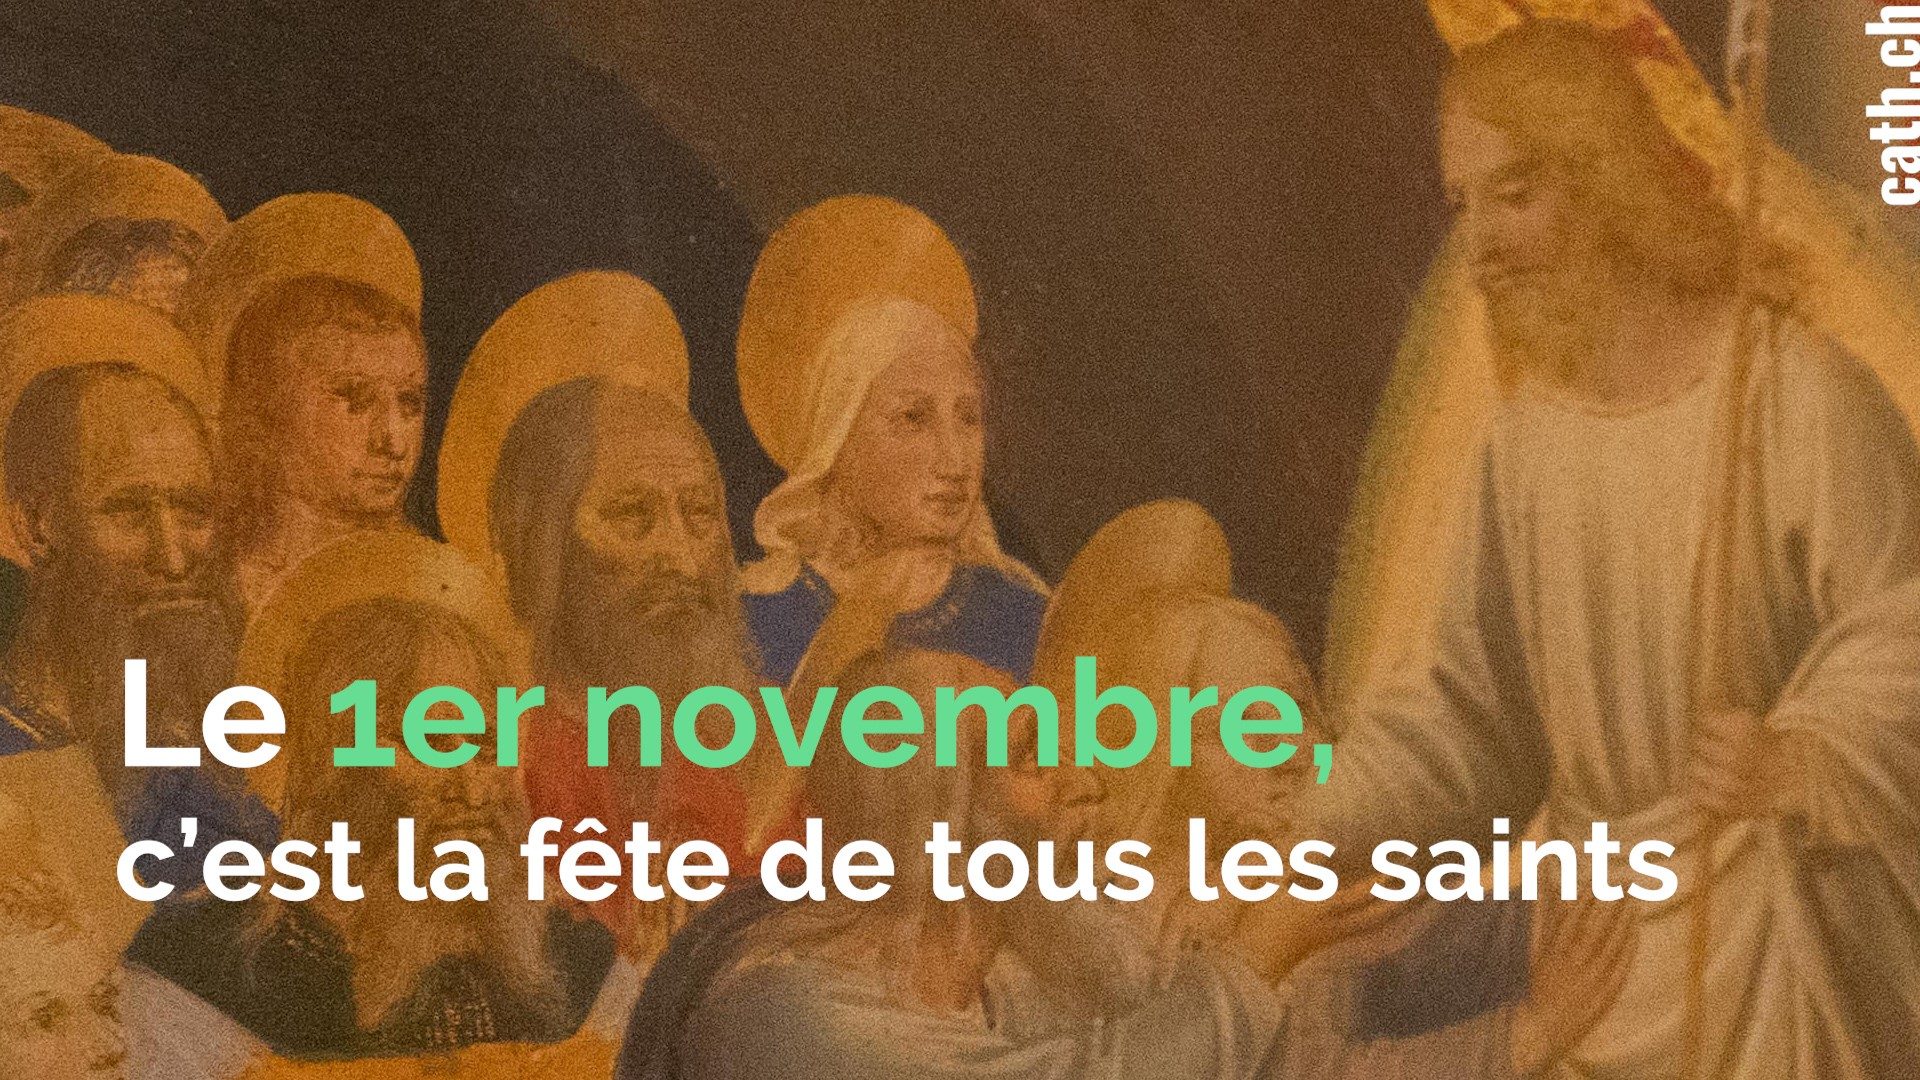 L'Eglise catholique fête ses saints le 1er novembre